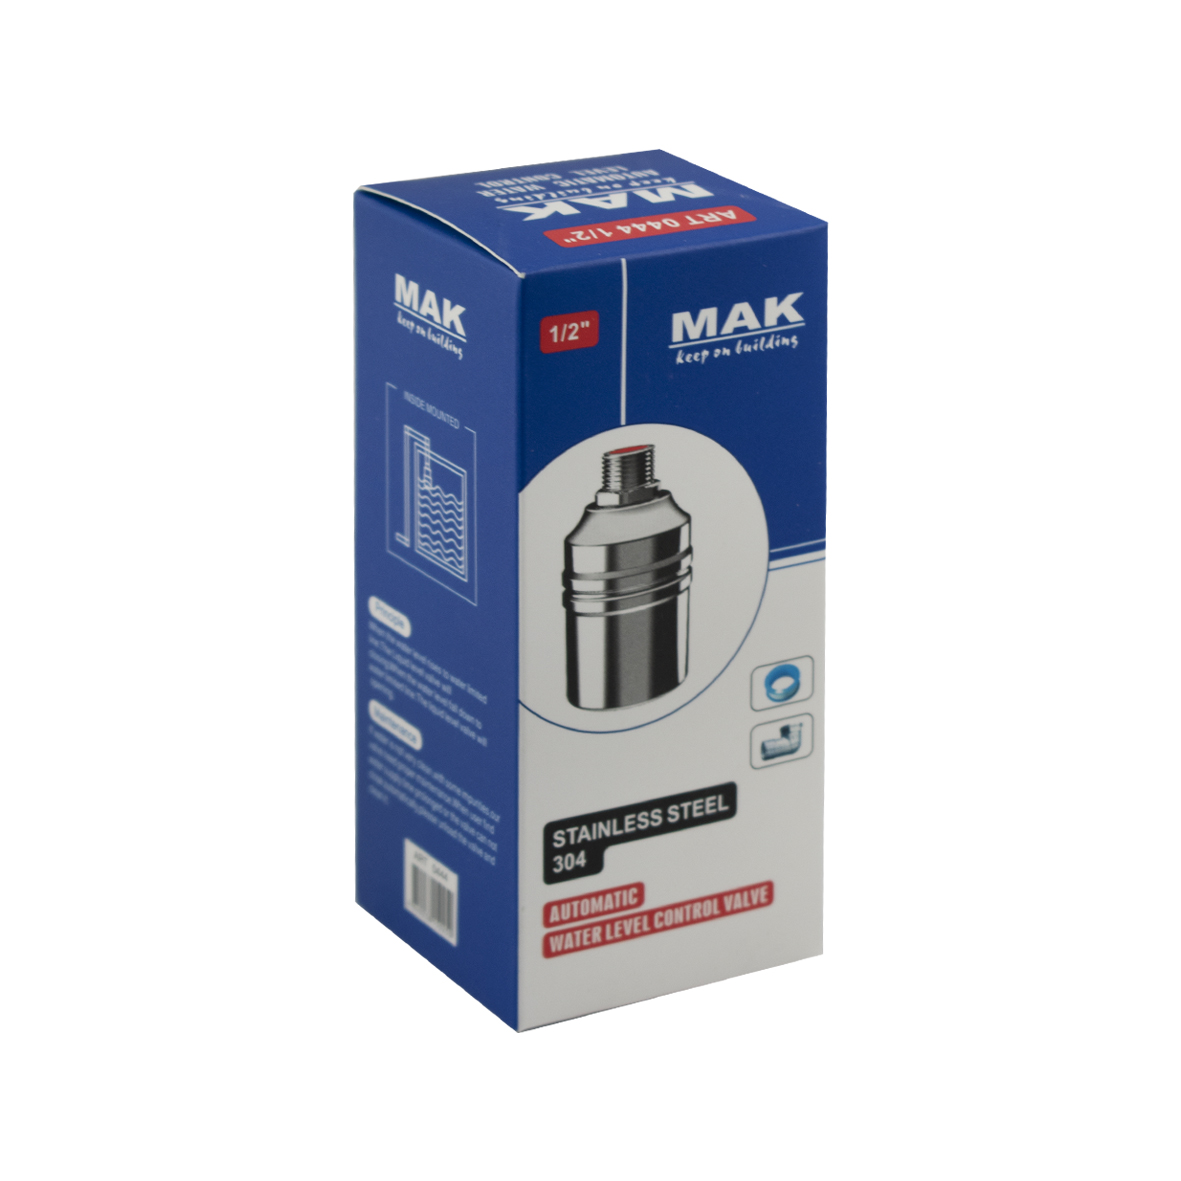 MAK - Поплавок - клапан для бочка и ёмкостей 1/2" из нержавеющей стали, боковое подключение